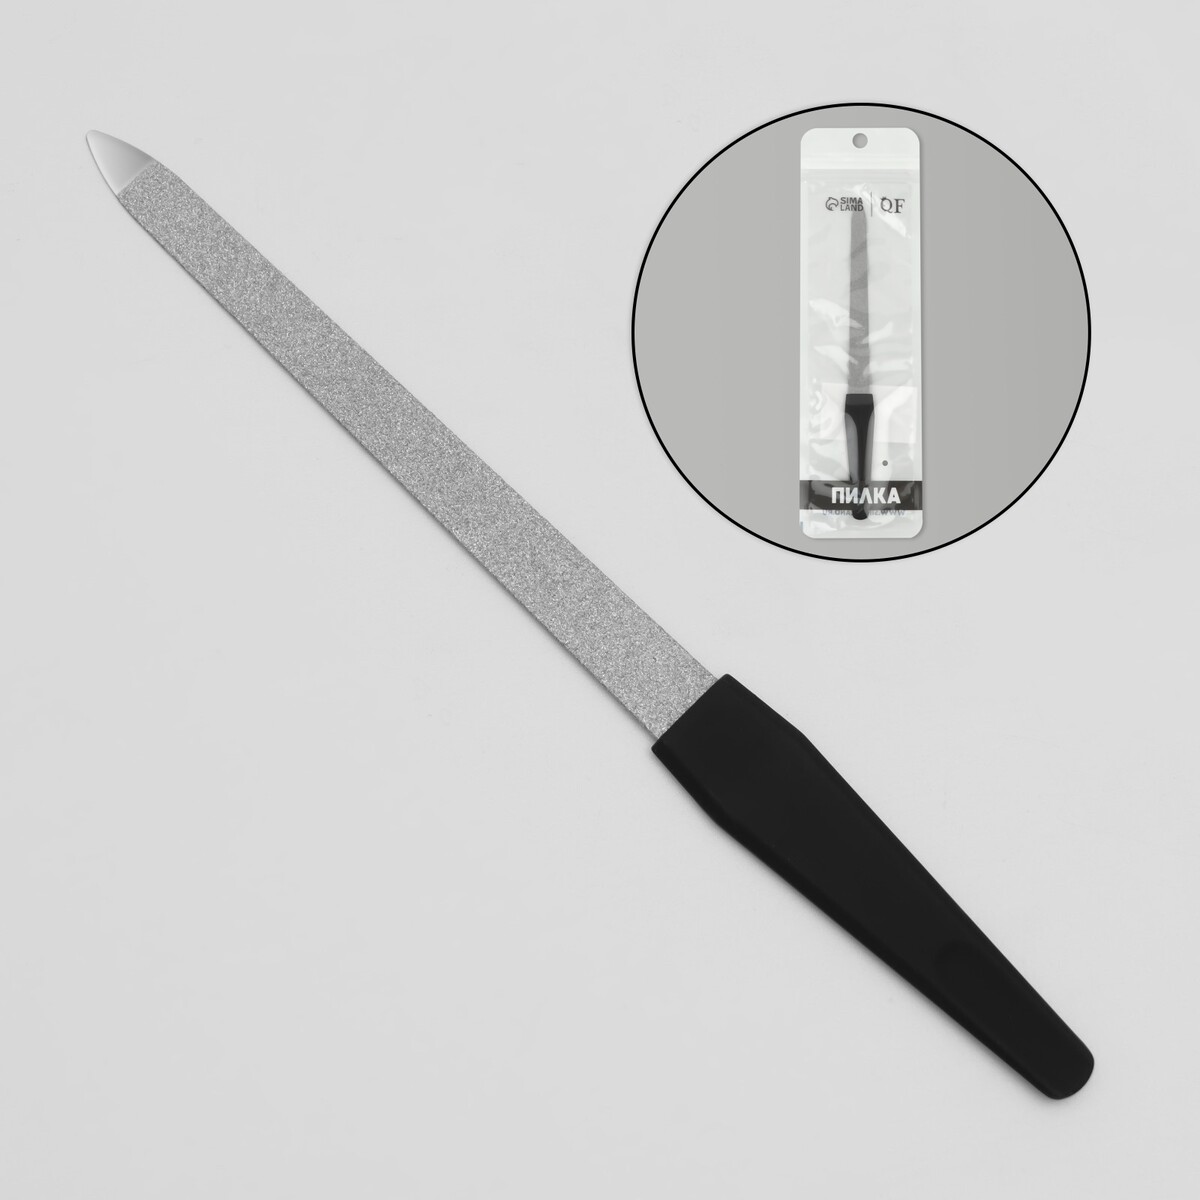 Пилка металлическая для ногтей, прорезиненная ручка, 17 см, цвет серебристый/черный